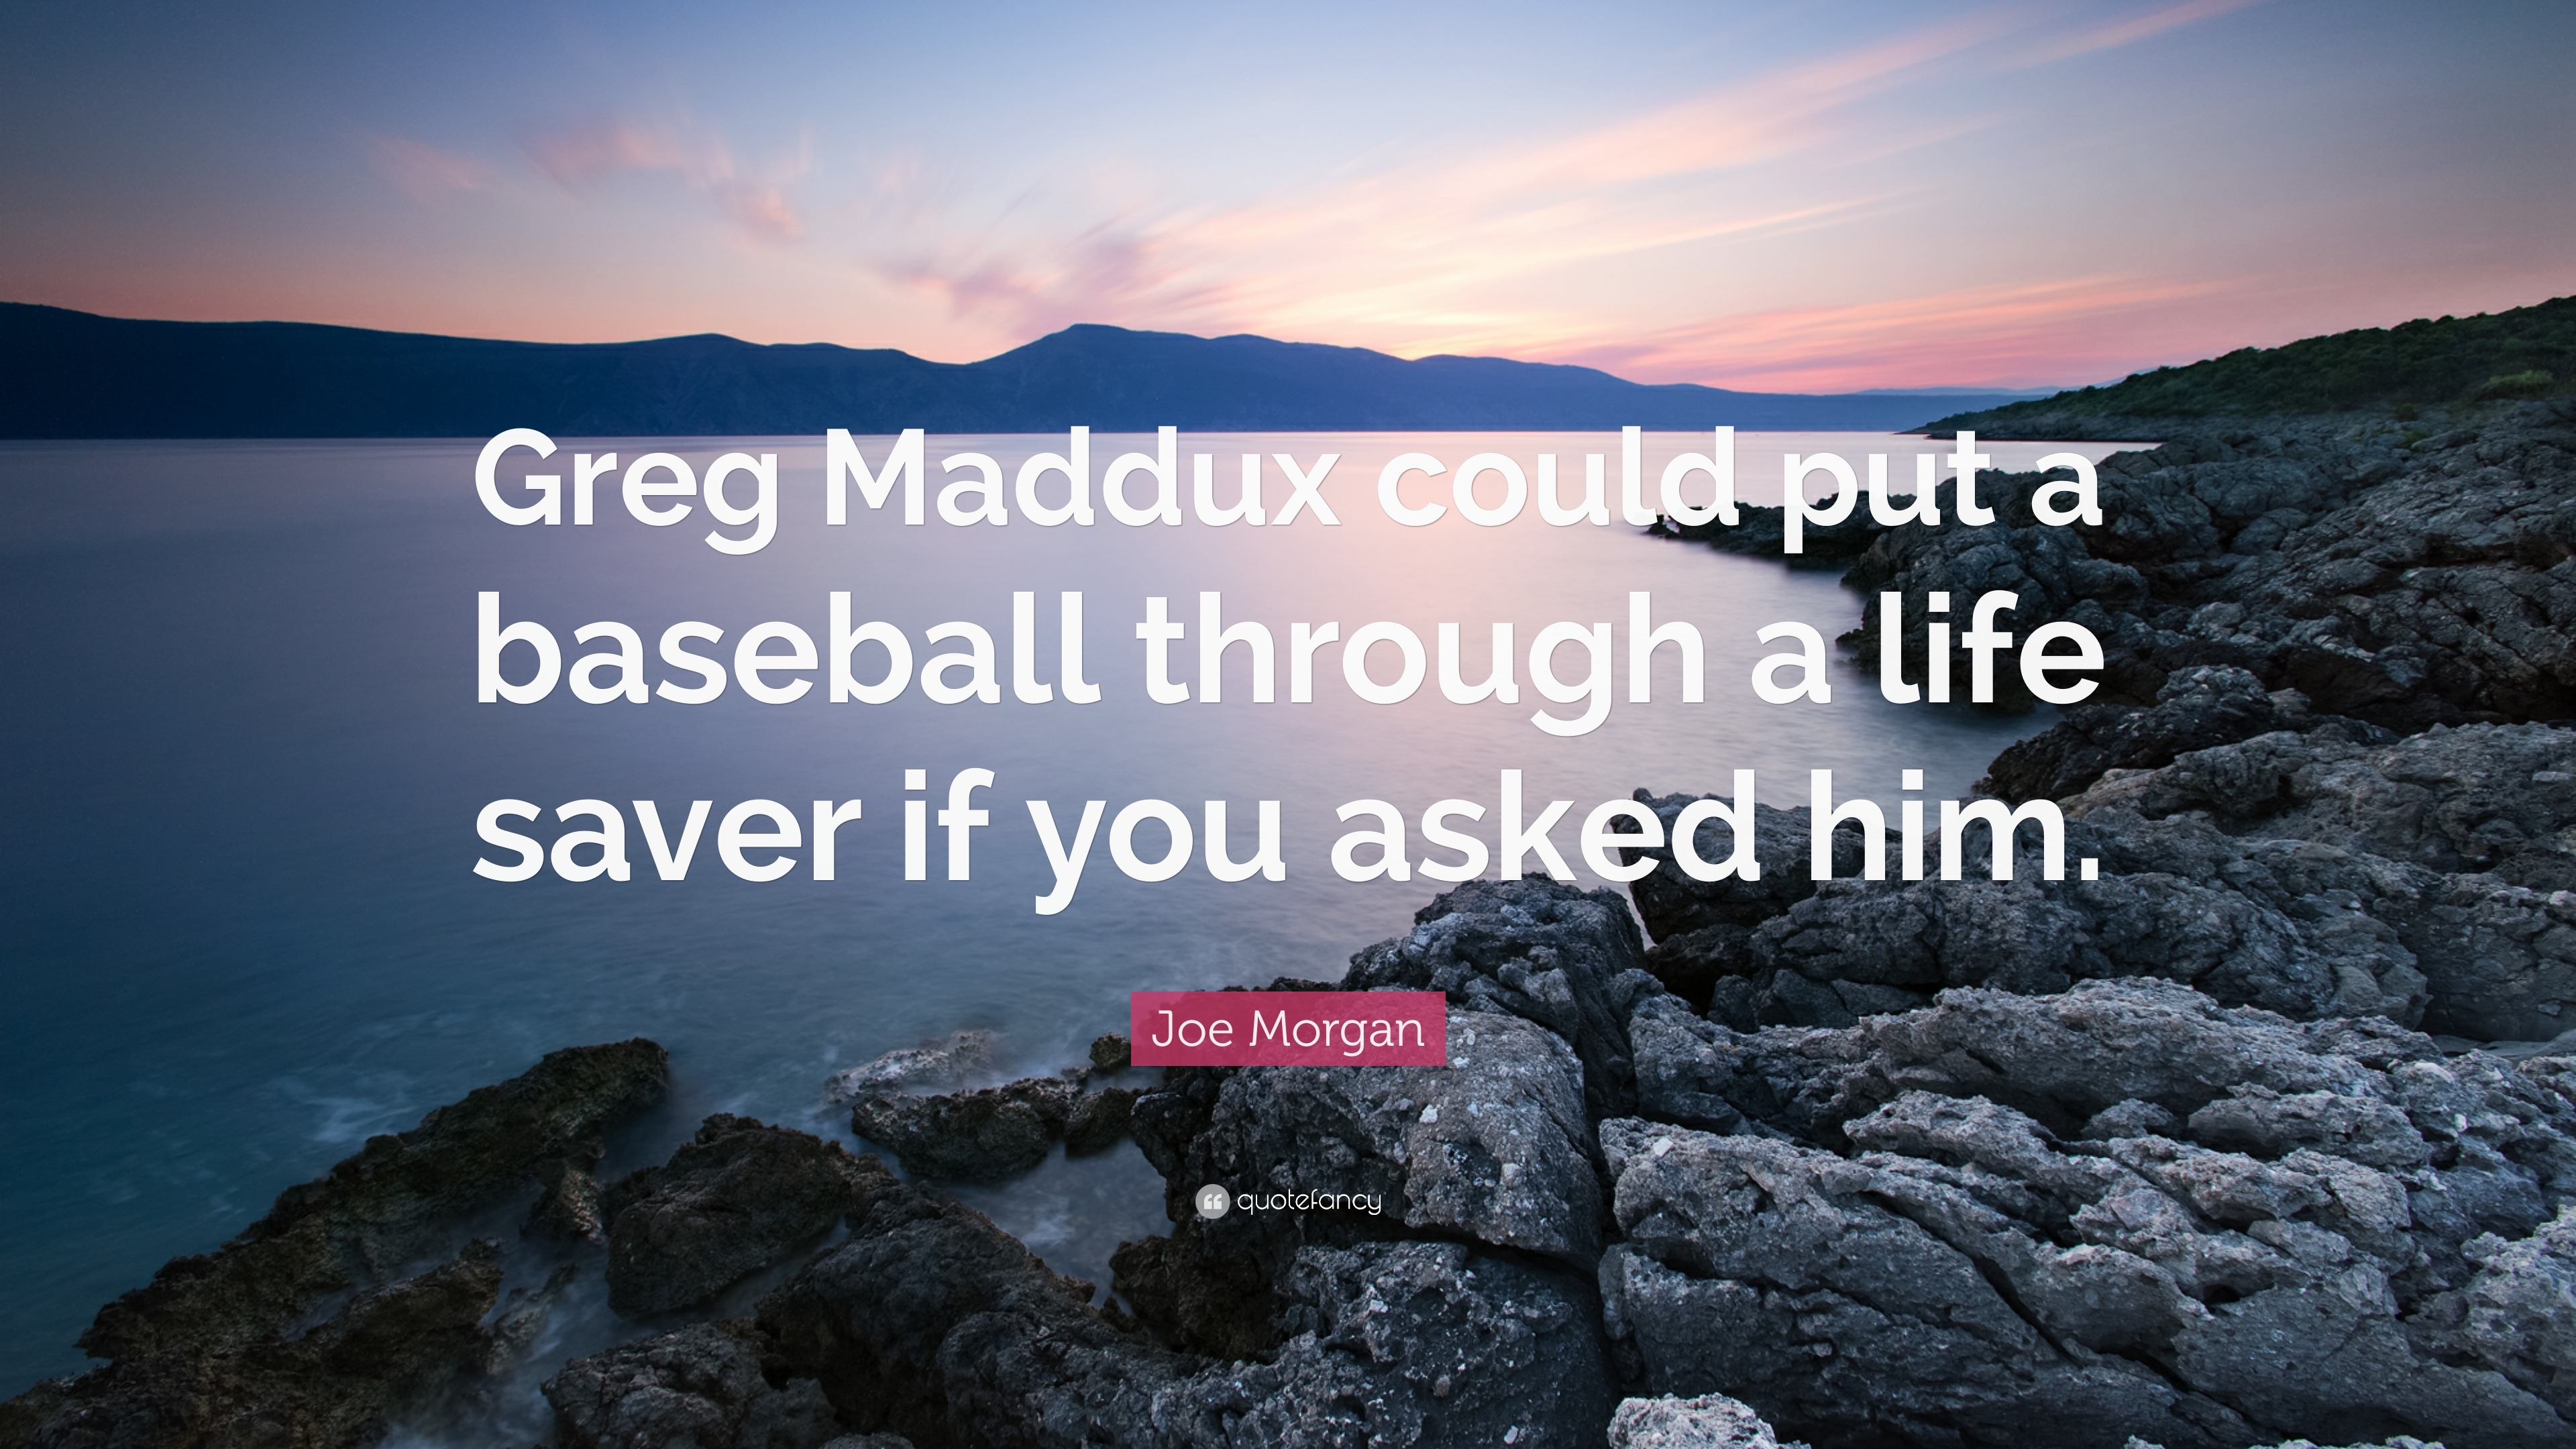 Joe Morgan quote: Greg Maddux could put a baseball through a life saver